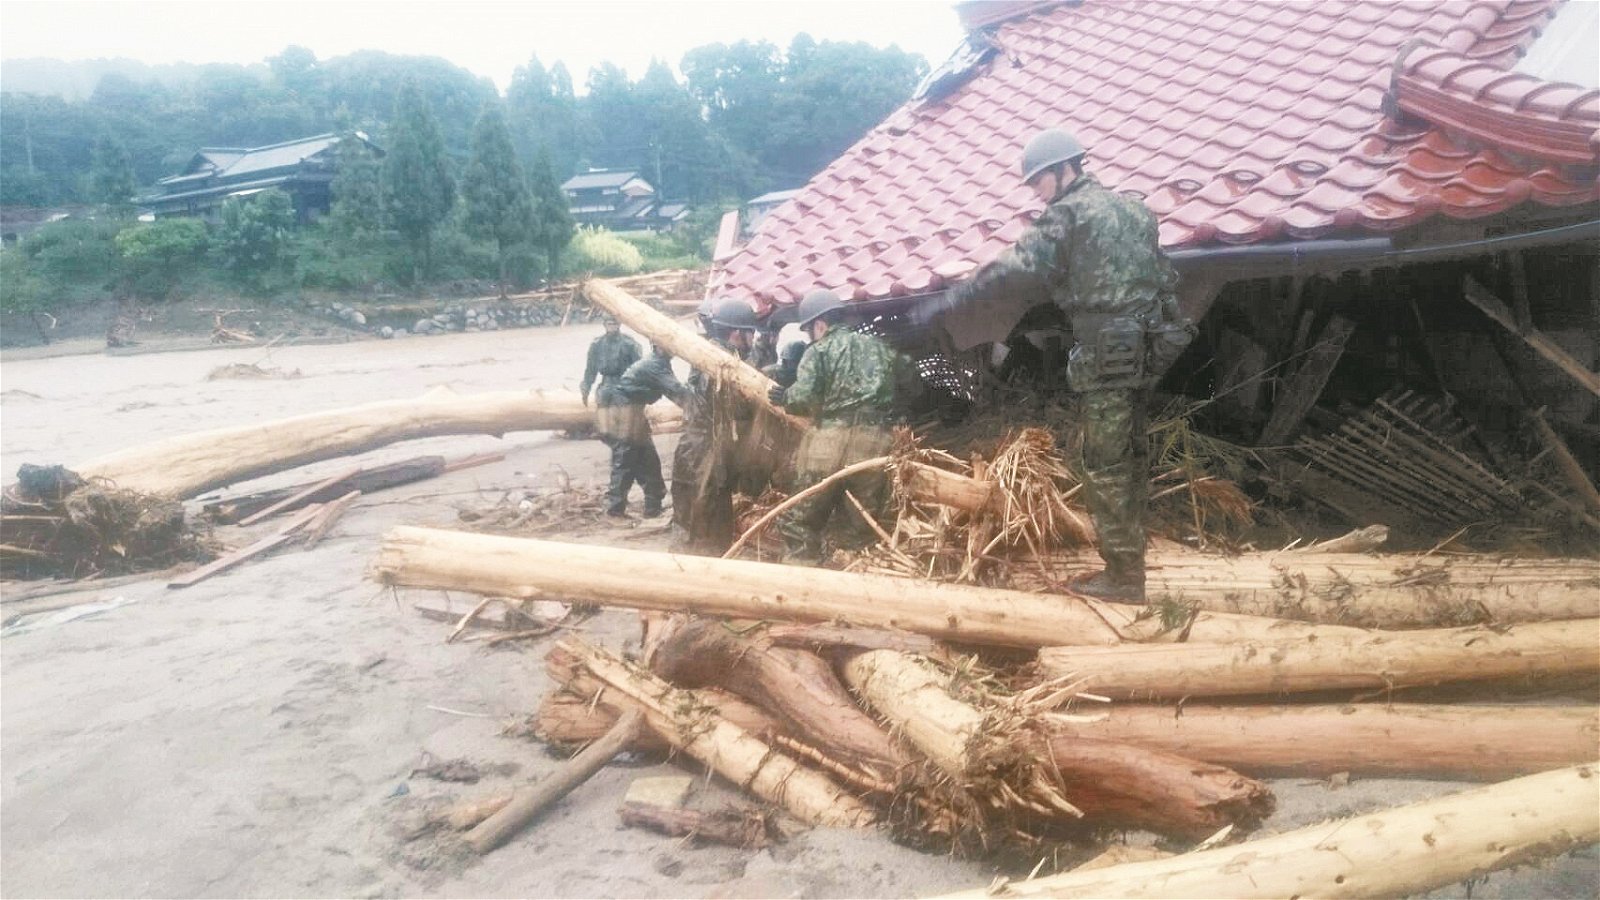 自卫队成员周四赶到朝仓市灾区，搜寻可能受困在倒塌房子内的灾民。